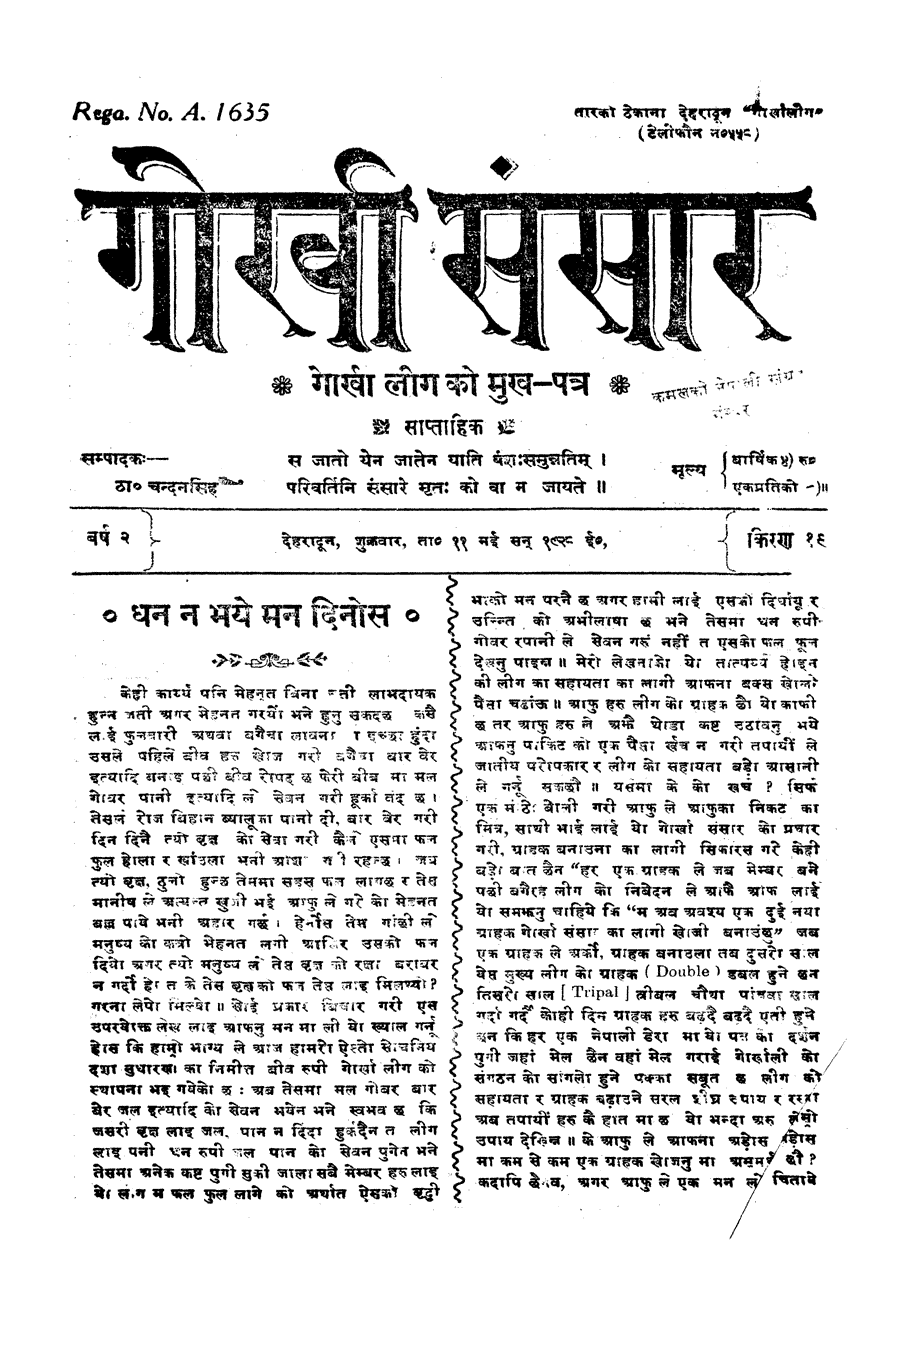 Gorkha Sansar, 11 May 1928, page 1